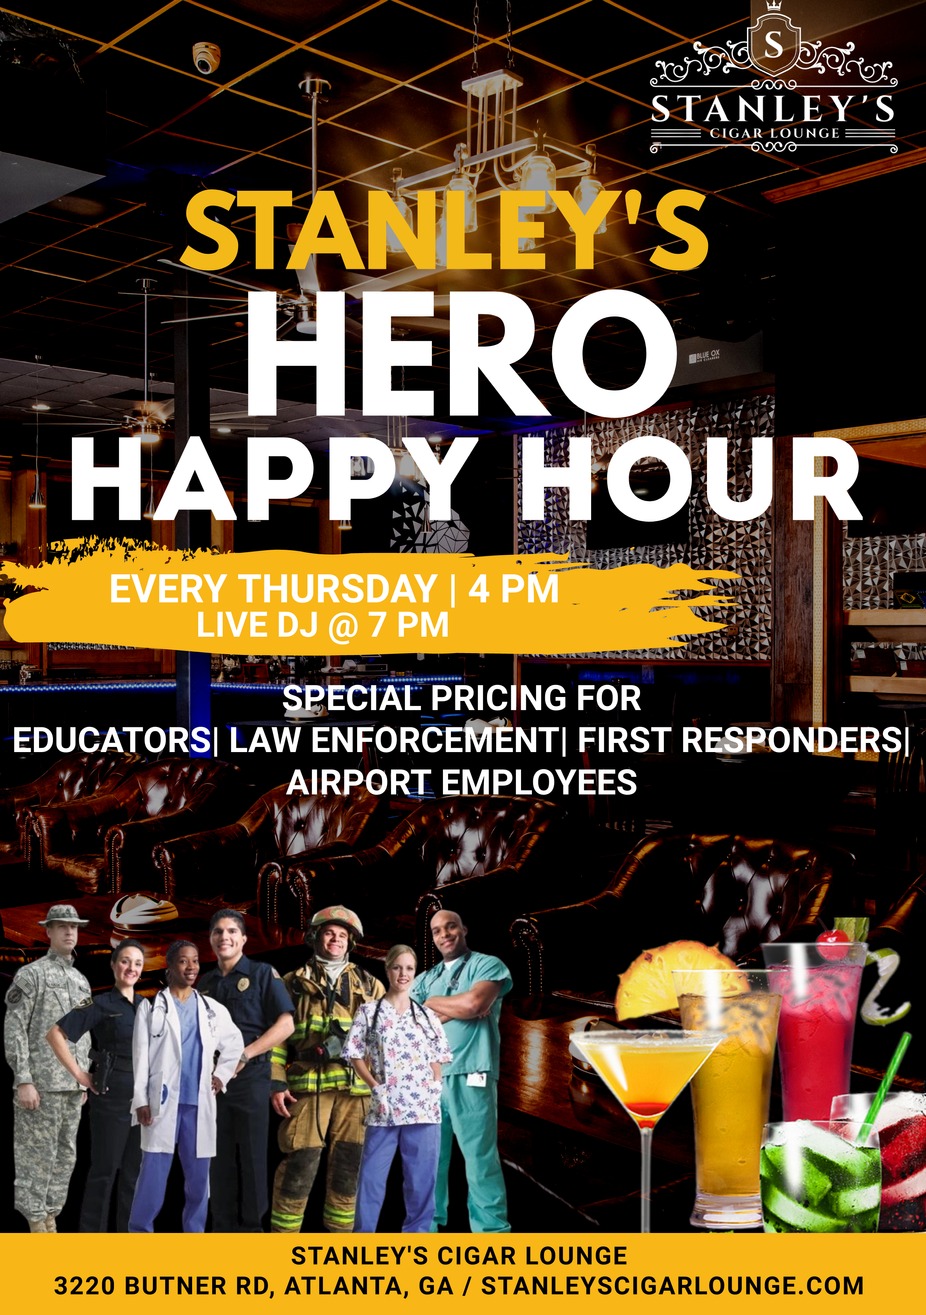 Stanley's Hero Happy Hour event photo